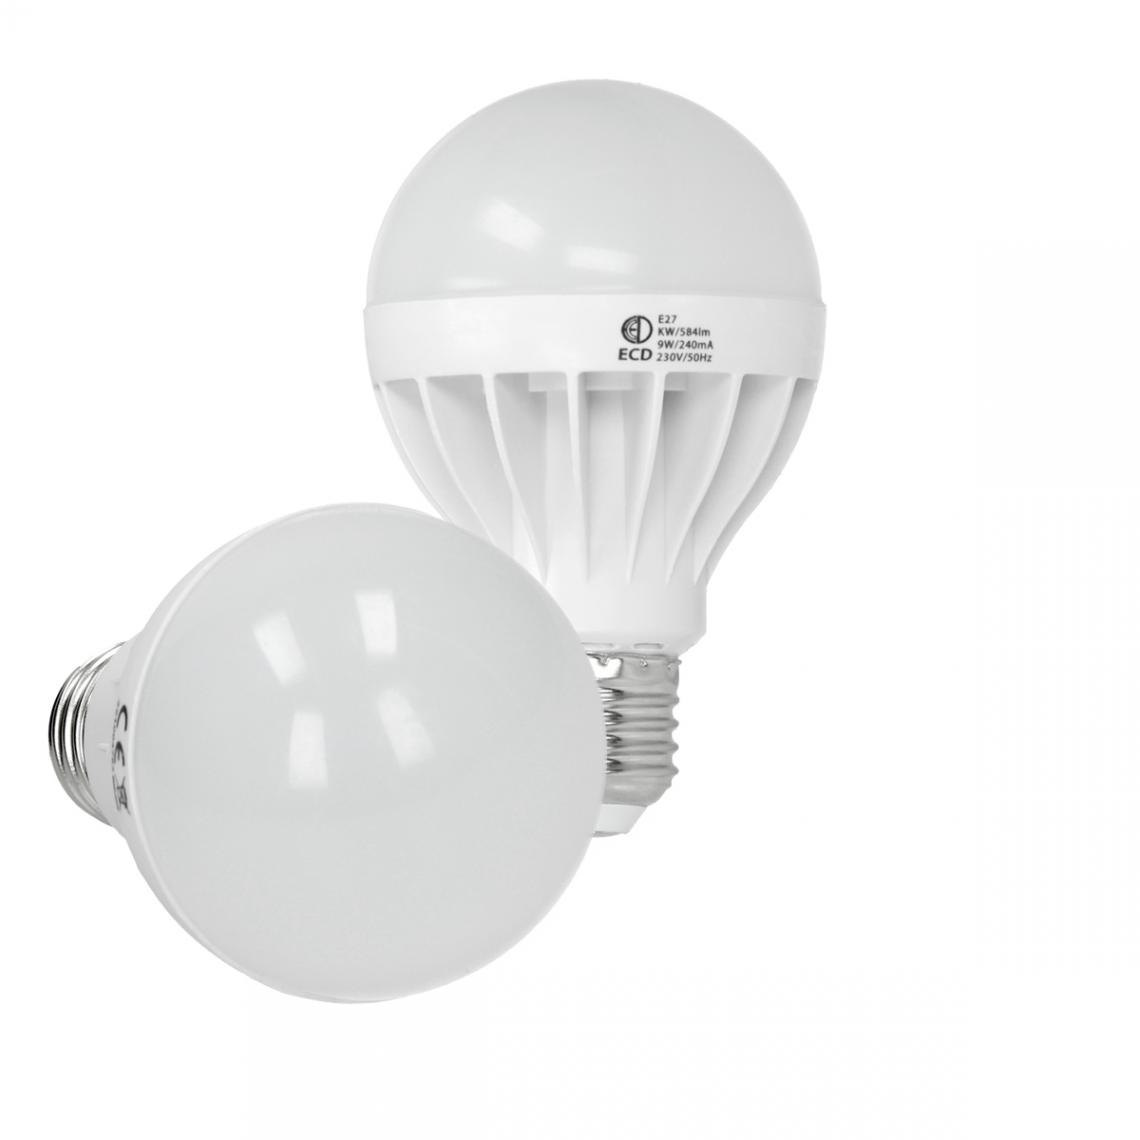 Ecd Germany - ECD Germany Ampoule de lampe projecteur 9W blanc froid - Ampoules LED